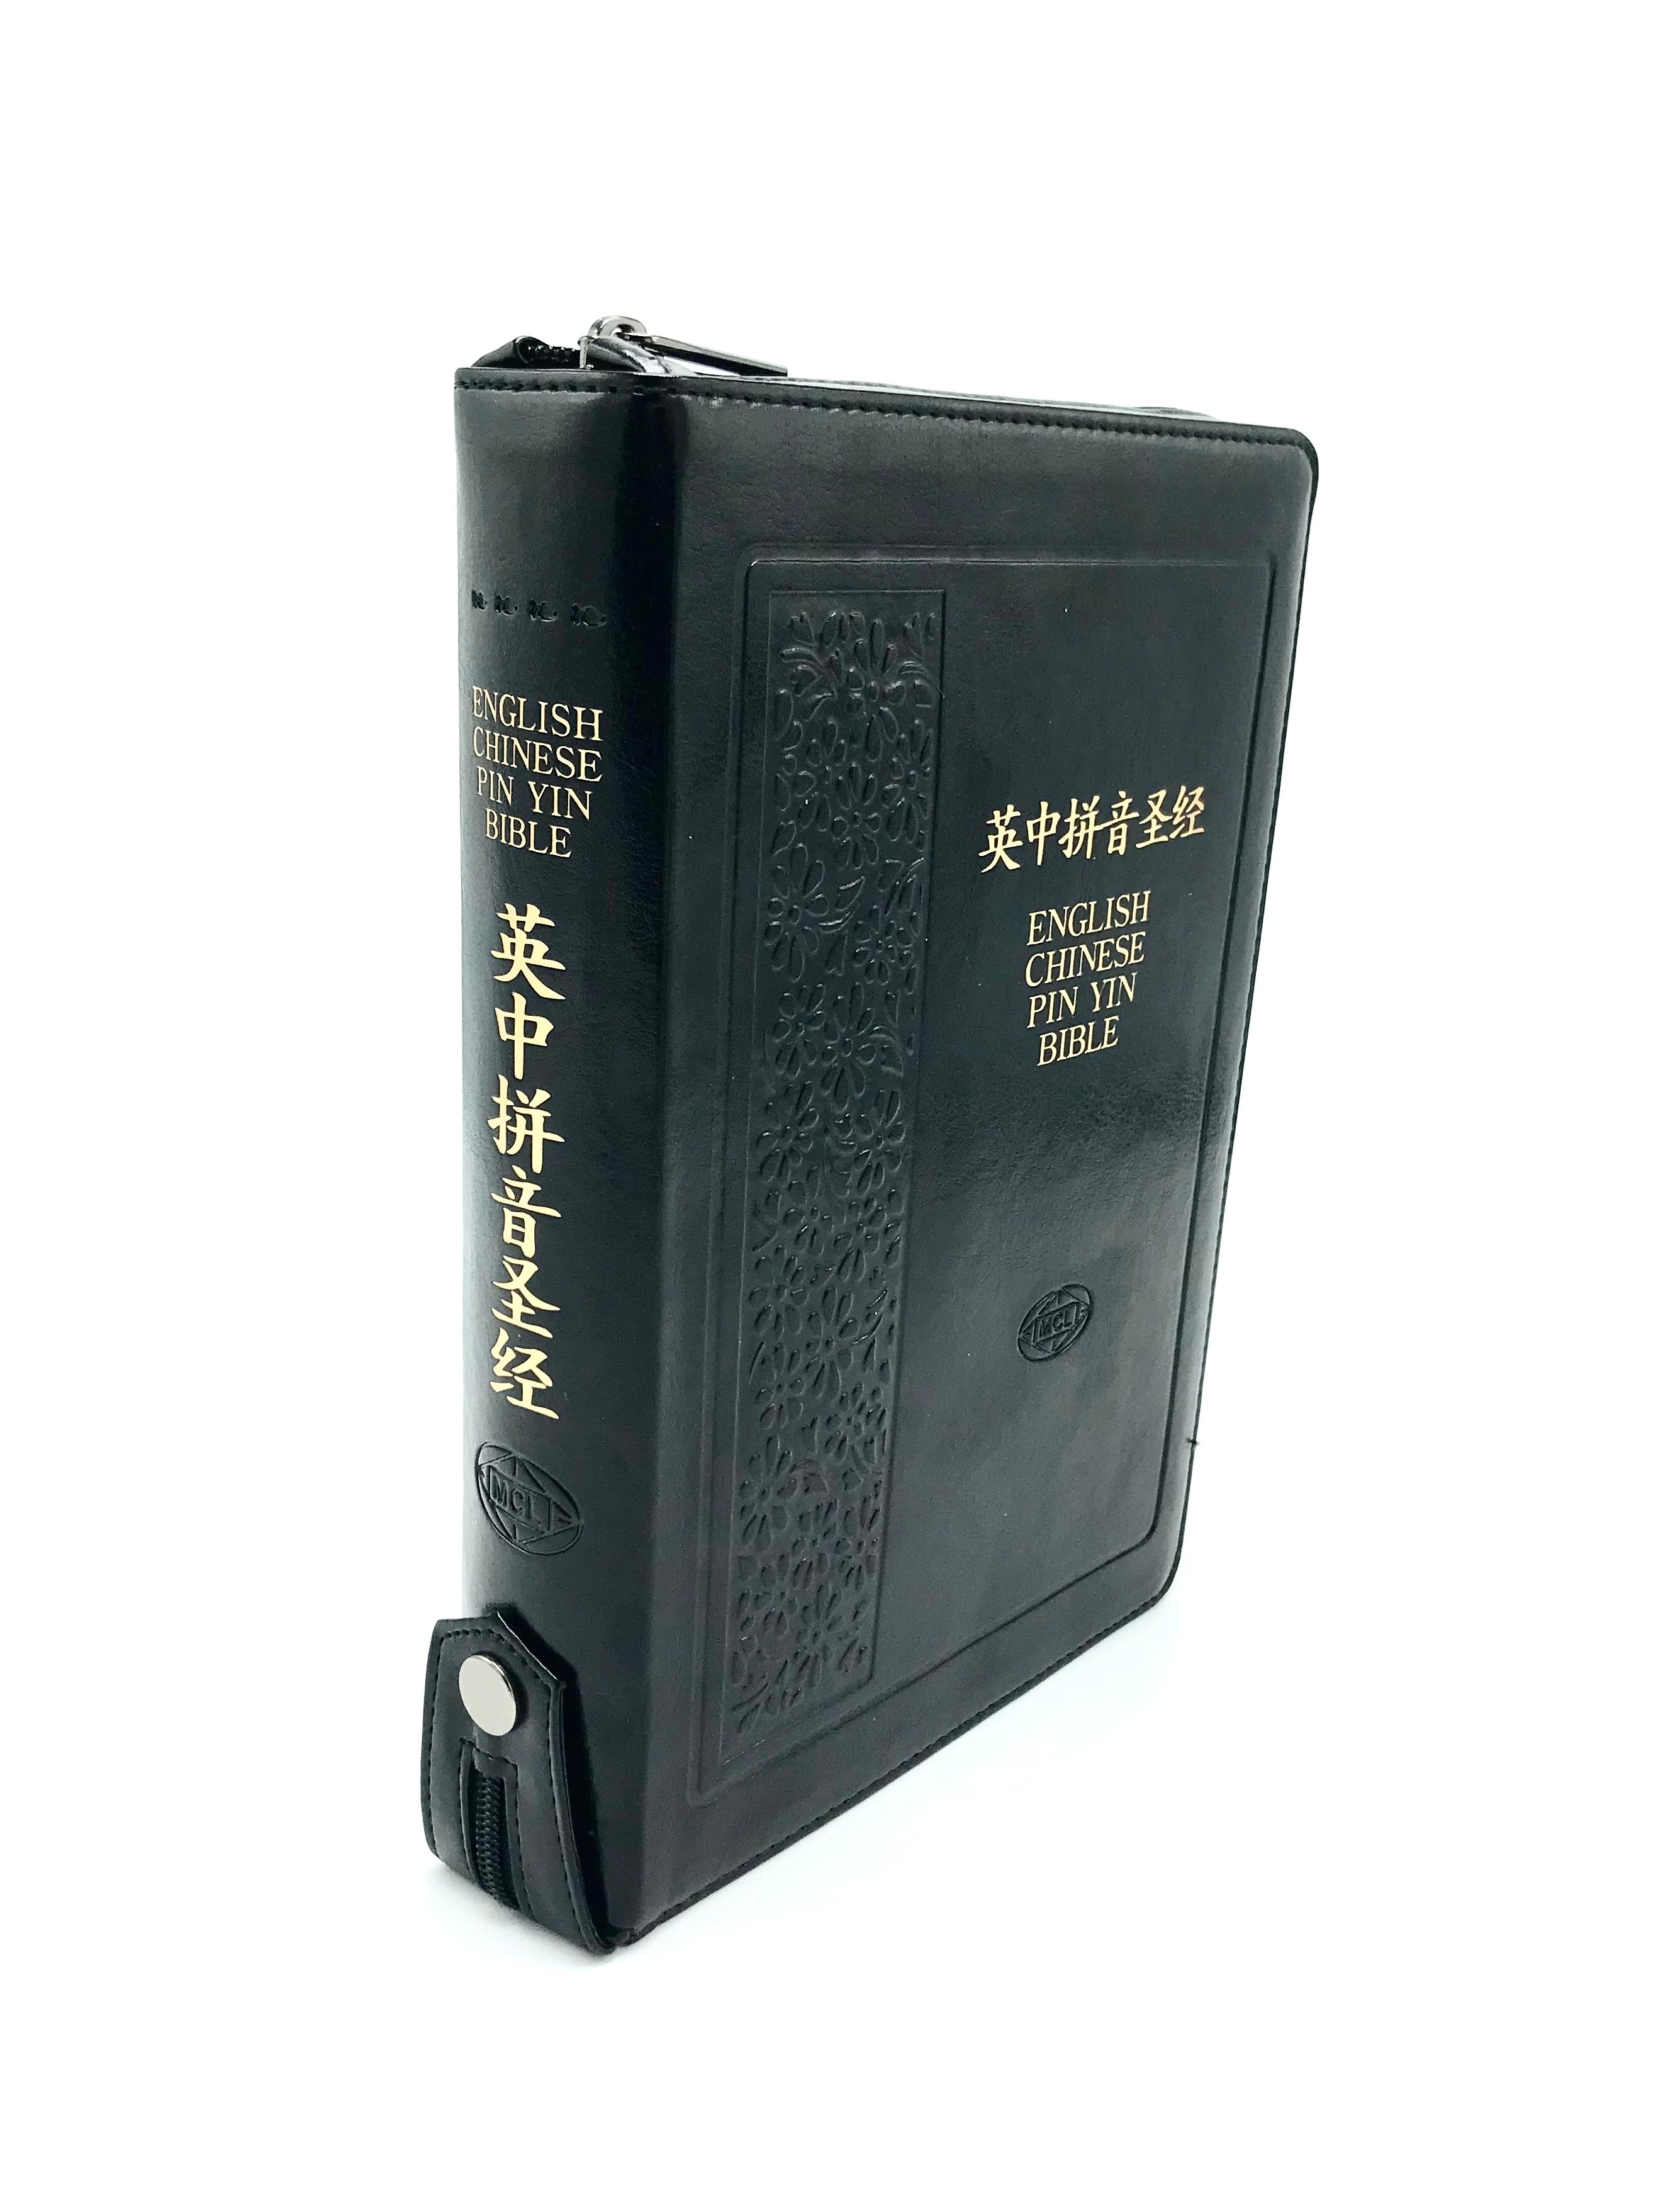 中英拼音聖經-簡體和合本/KJV-皮面金邊拉鍊(10本以上特價$60+限時免運費) Bilingual Pinyin Union Bible/KJV Black Leather